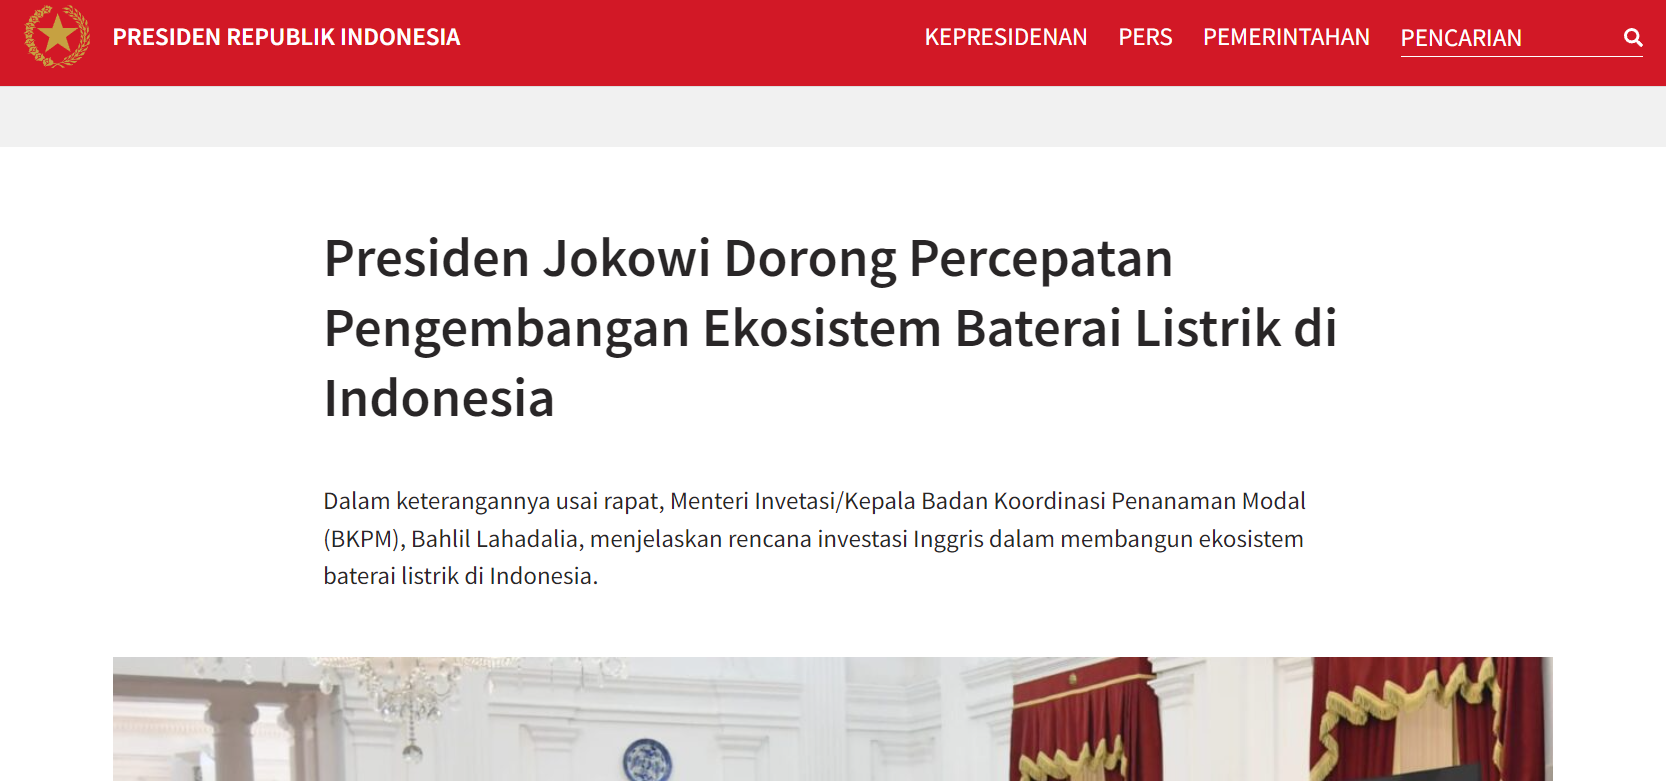 （来源：印尼总统府官网）